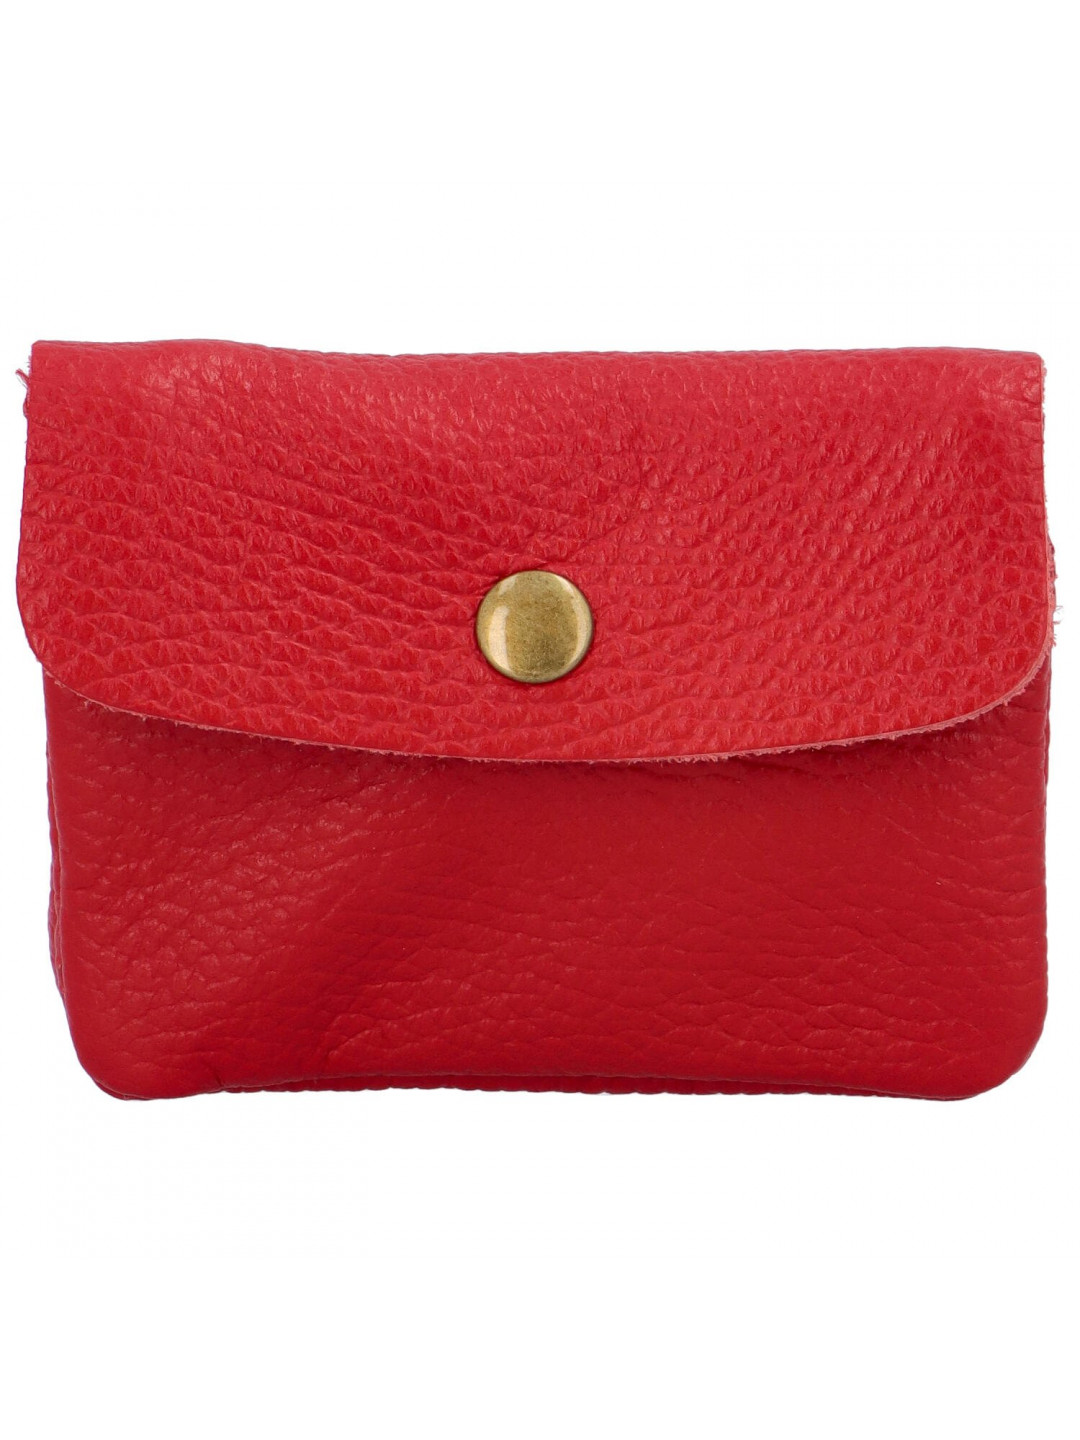 Malá kožená barevná peněženka do každé kabelky Simone D58 červená